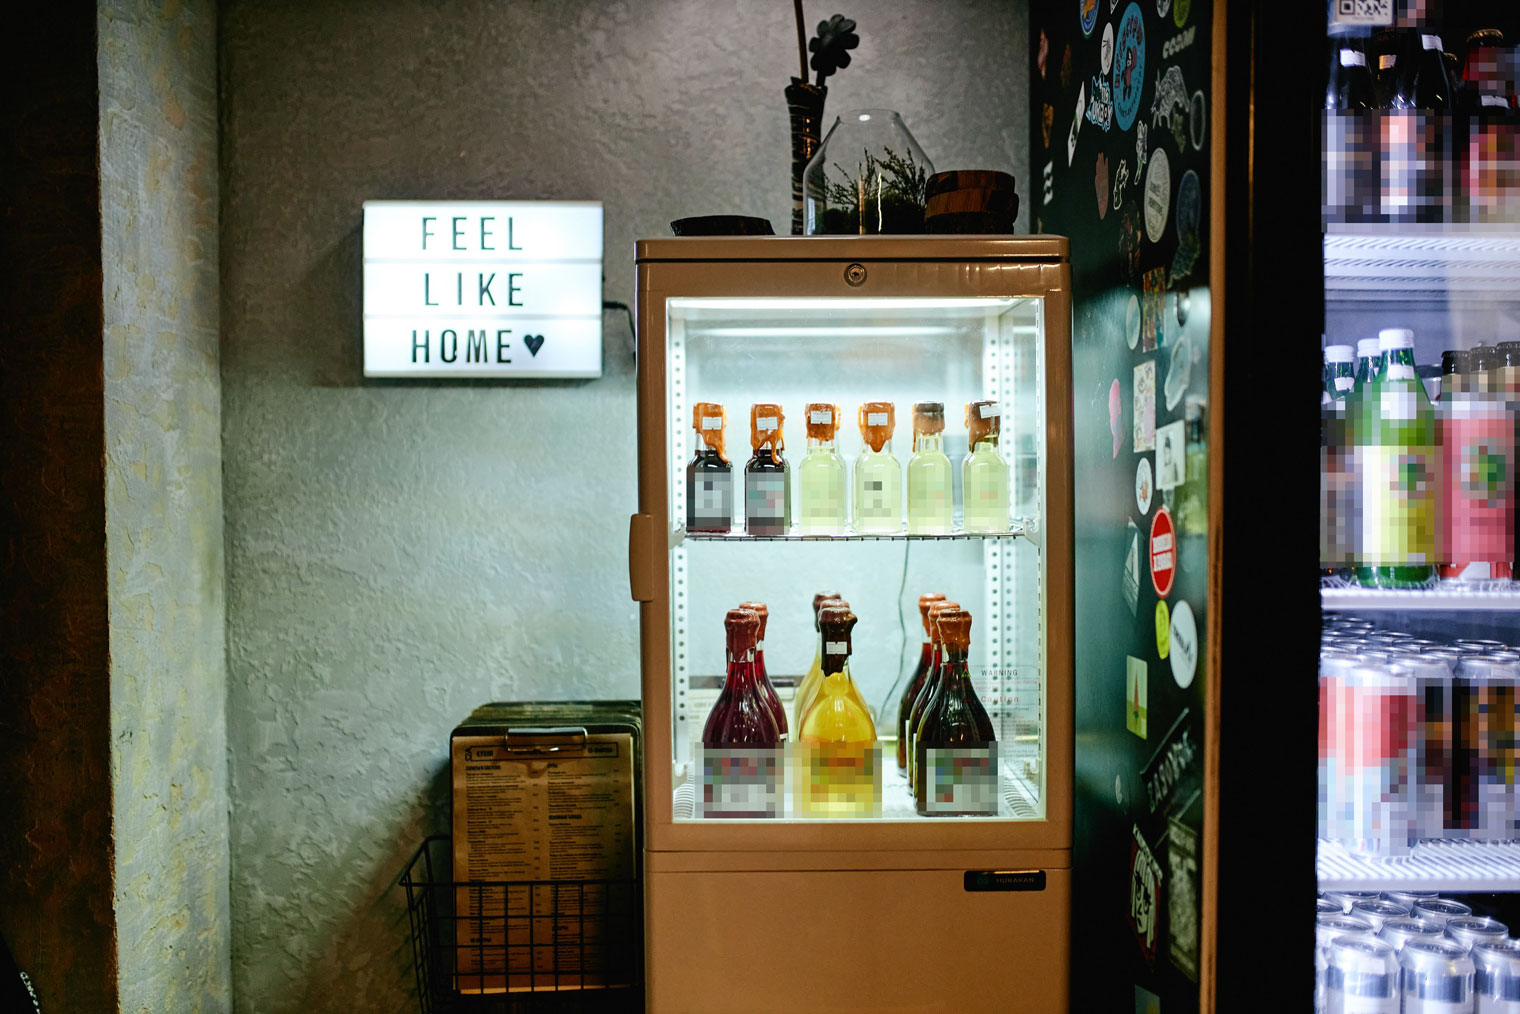 Поставщики пива и газировки бесплатно предоставили нам свои холодильники, брендированные пивные бокалы и барные коврики. За это мы заключаем с ними договор поставки напитков — популярная практика на рынке